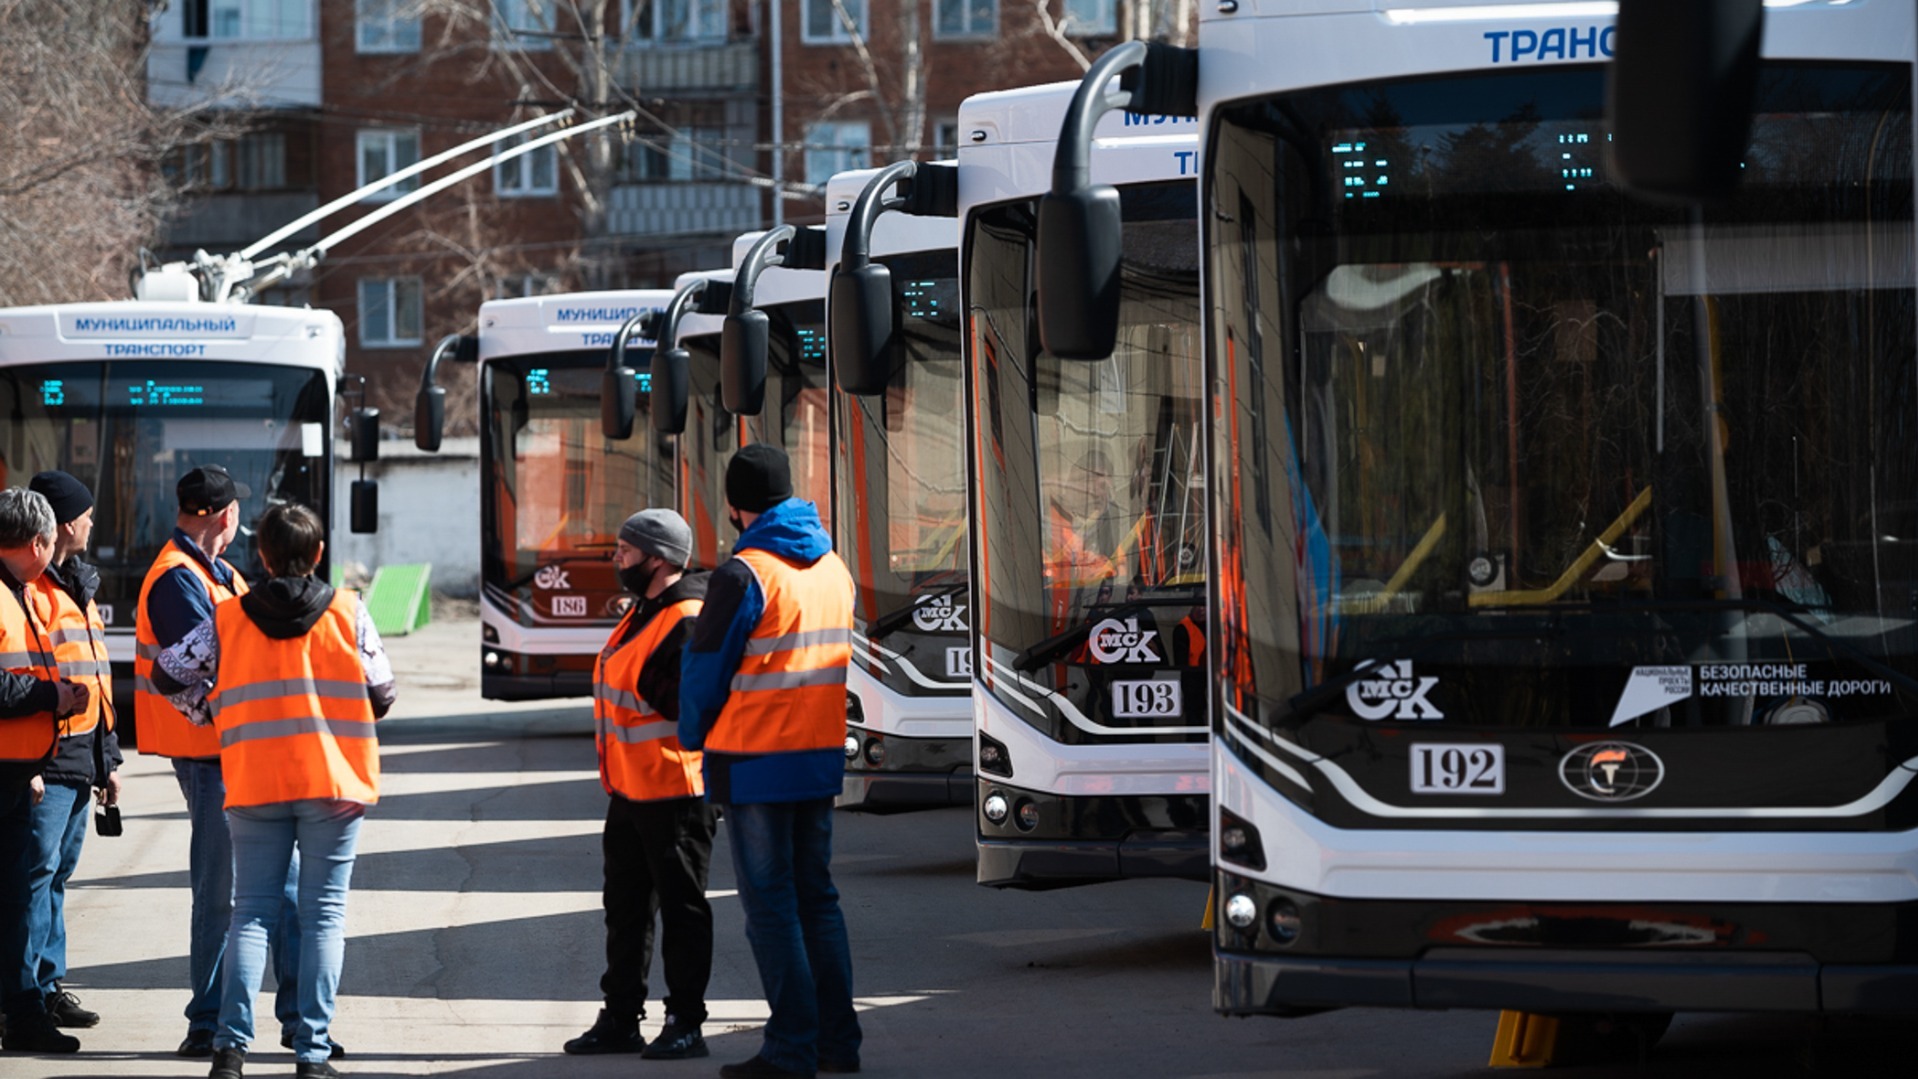 Компания экс-министра РФ поставила новые троллейбусы в Новосибирск по лизингу